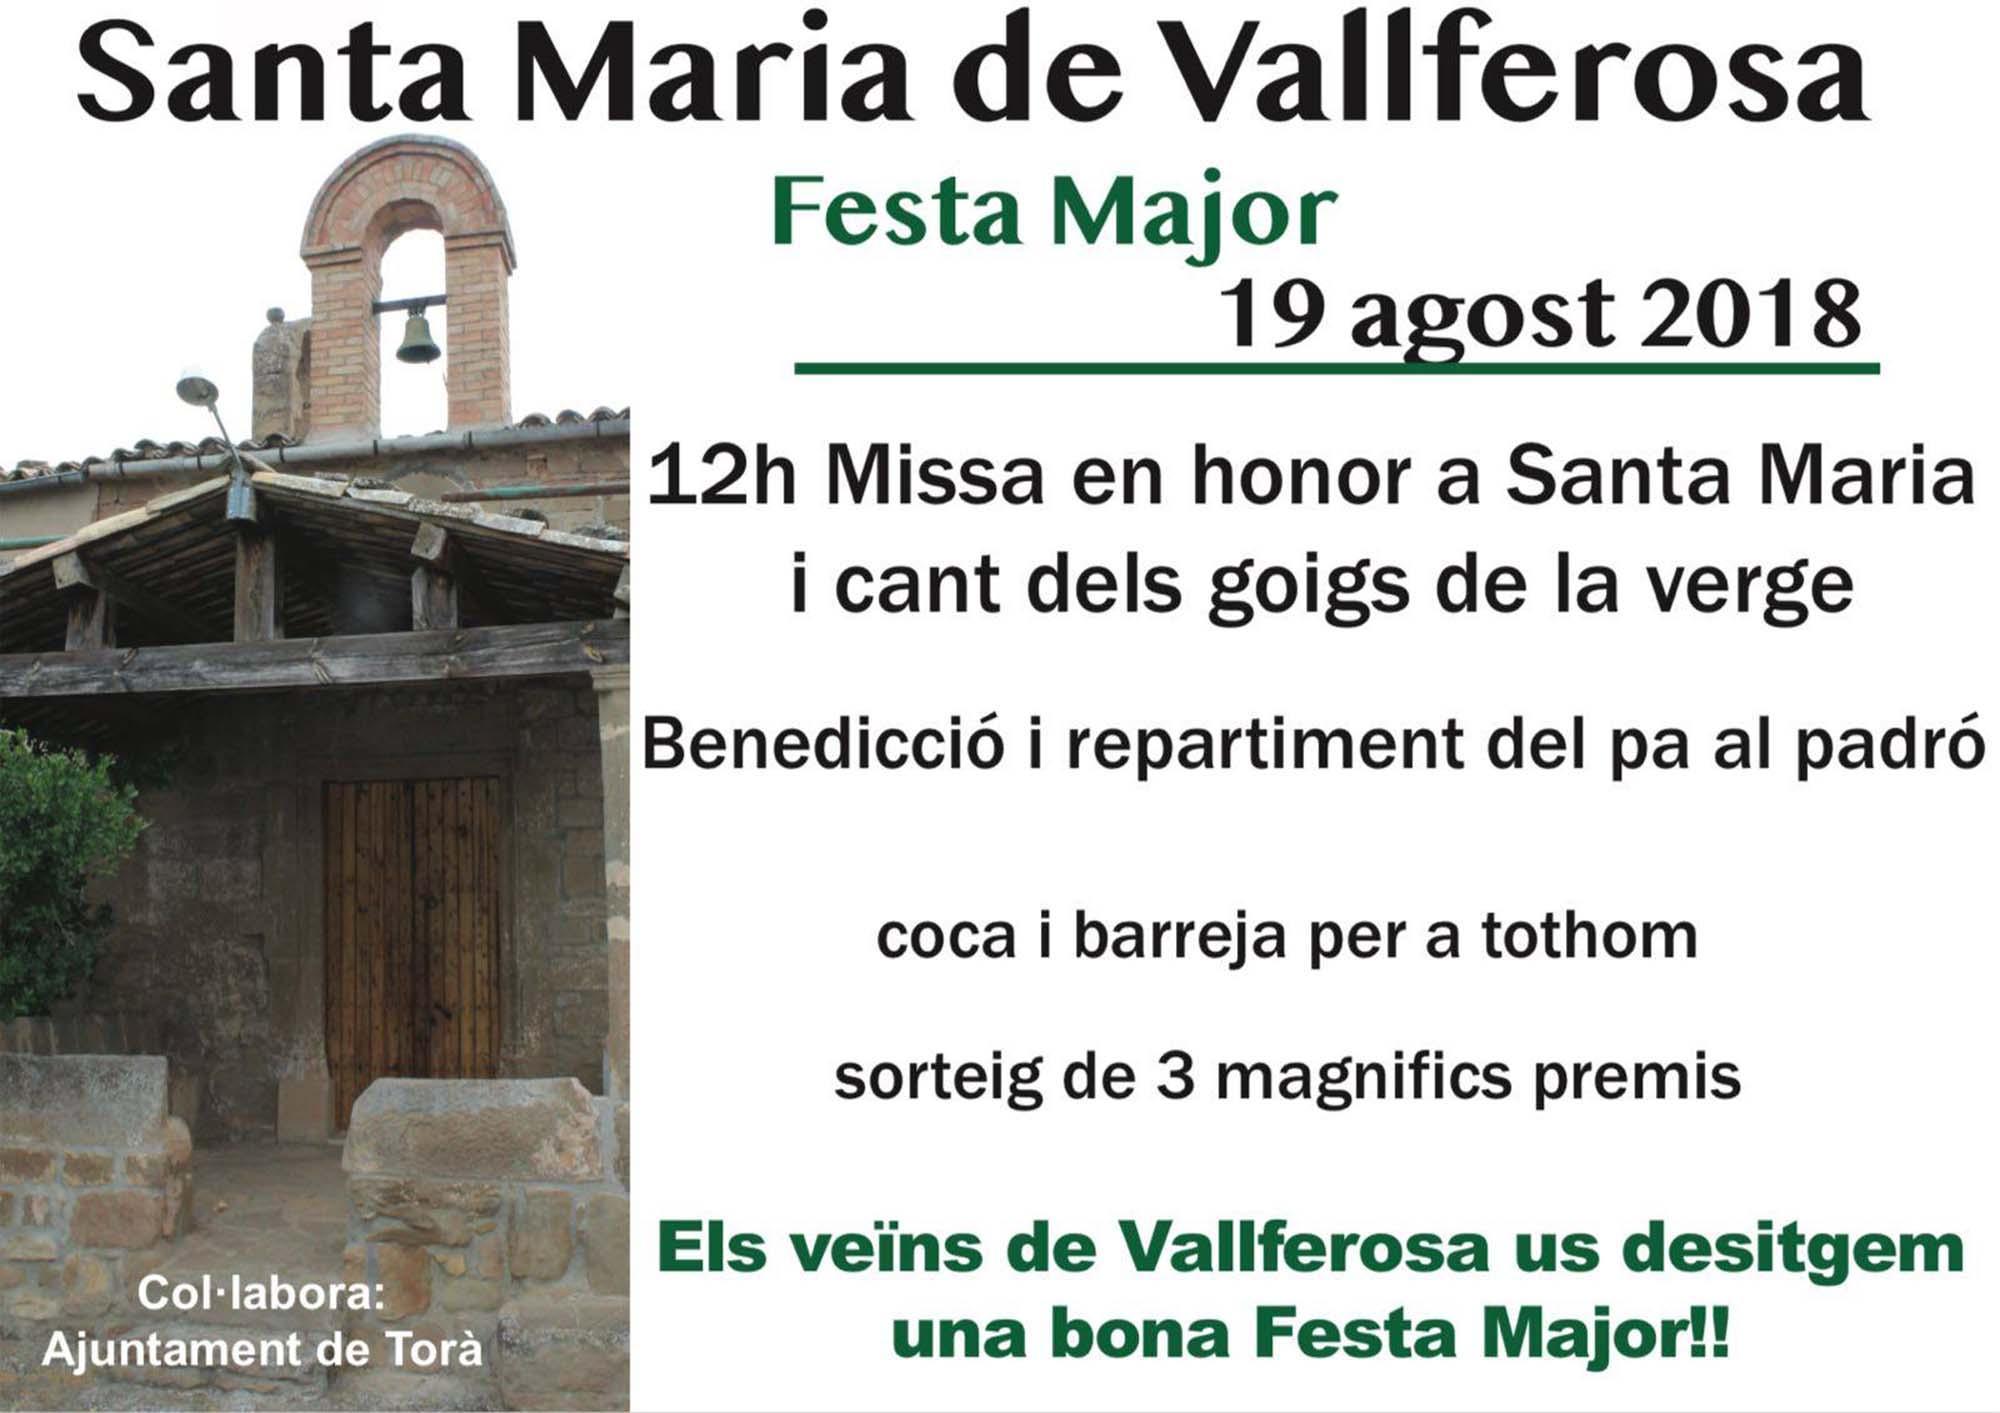 Festa major de Vallferosa 2018